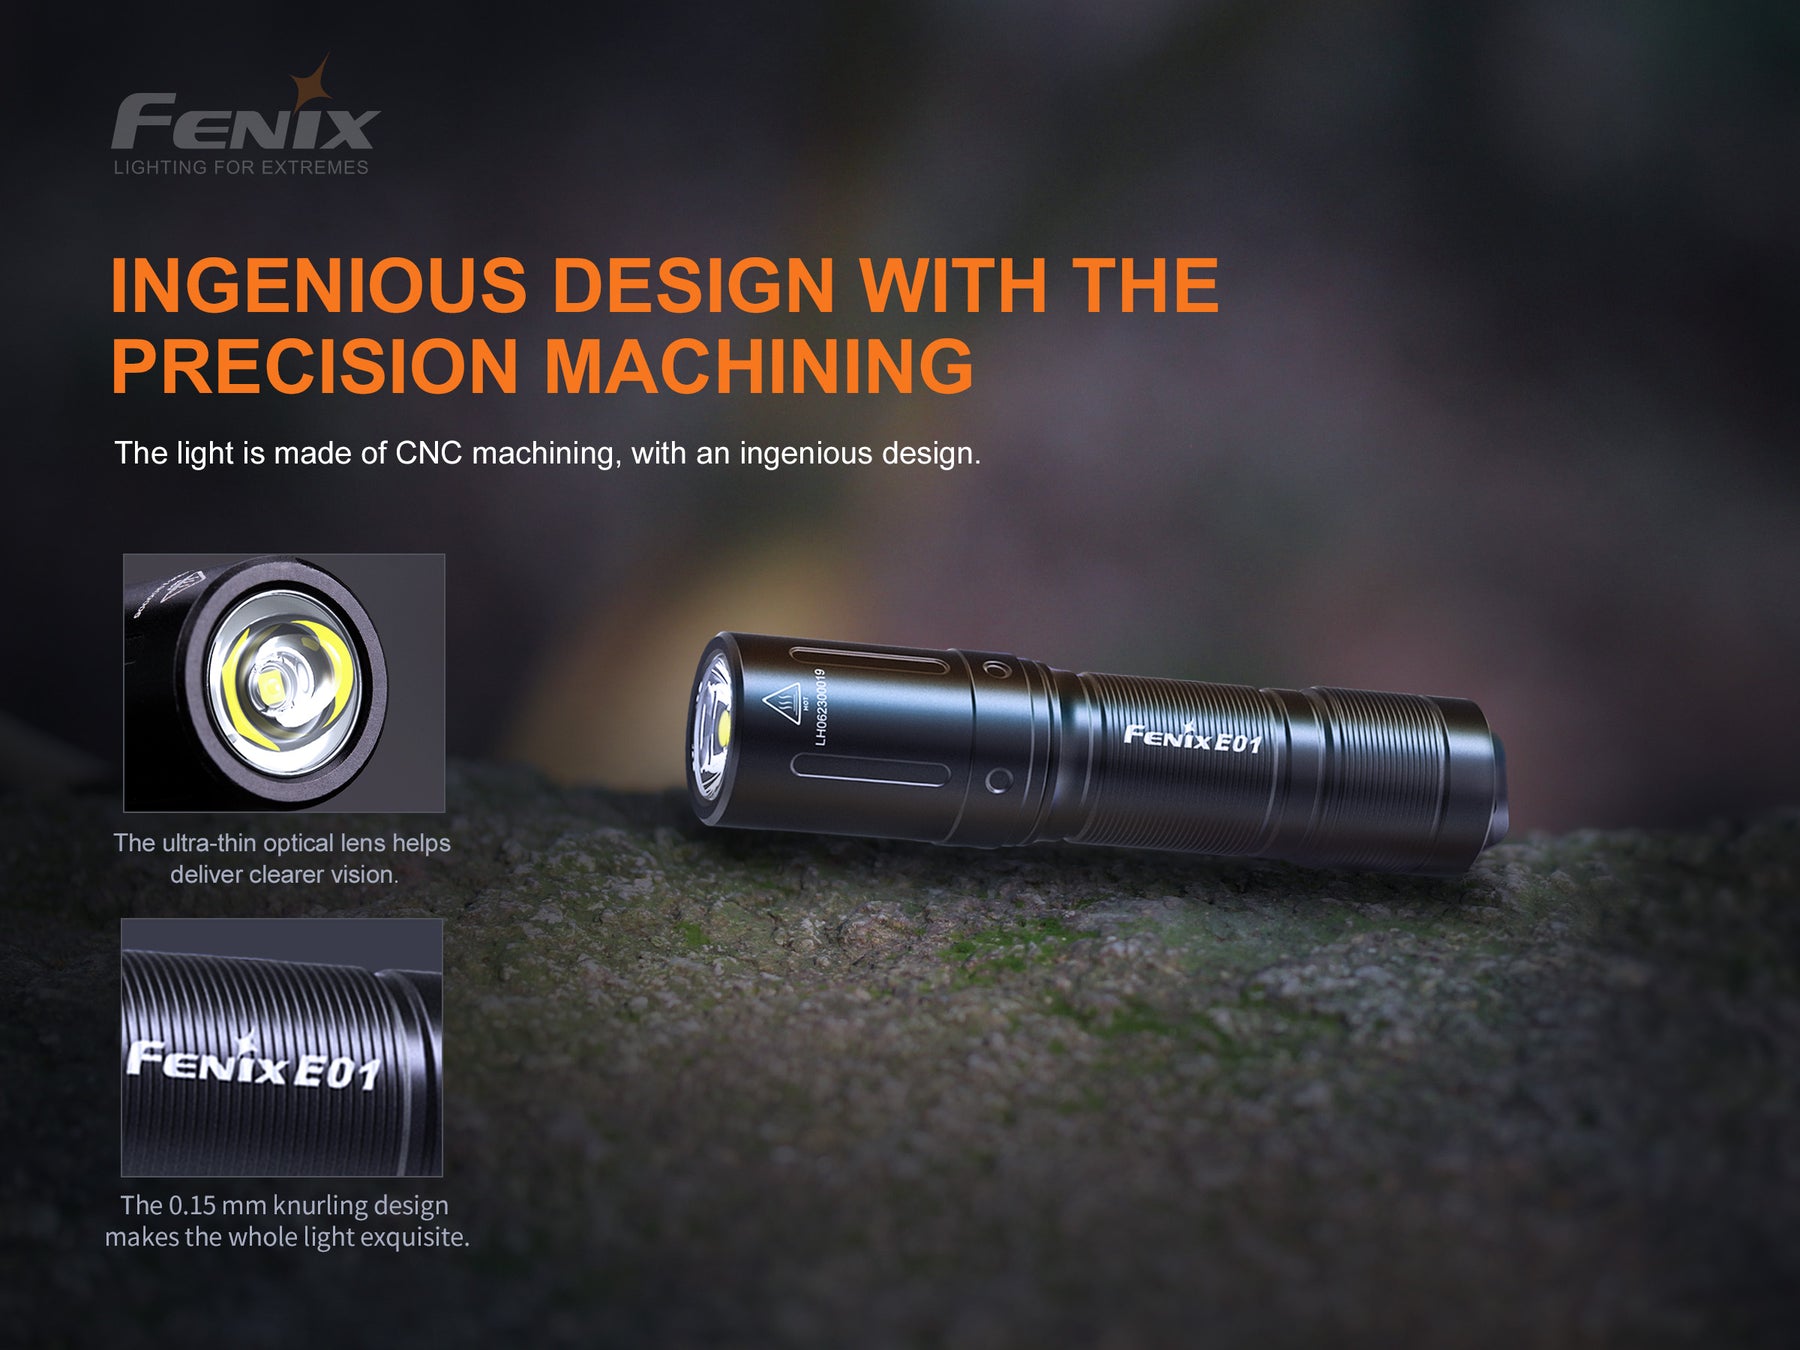 Fenix E01 V2.0 Keychain Flashlight (100 Lumens) (2 Versions)